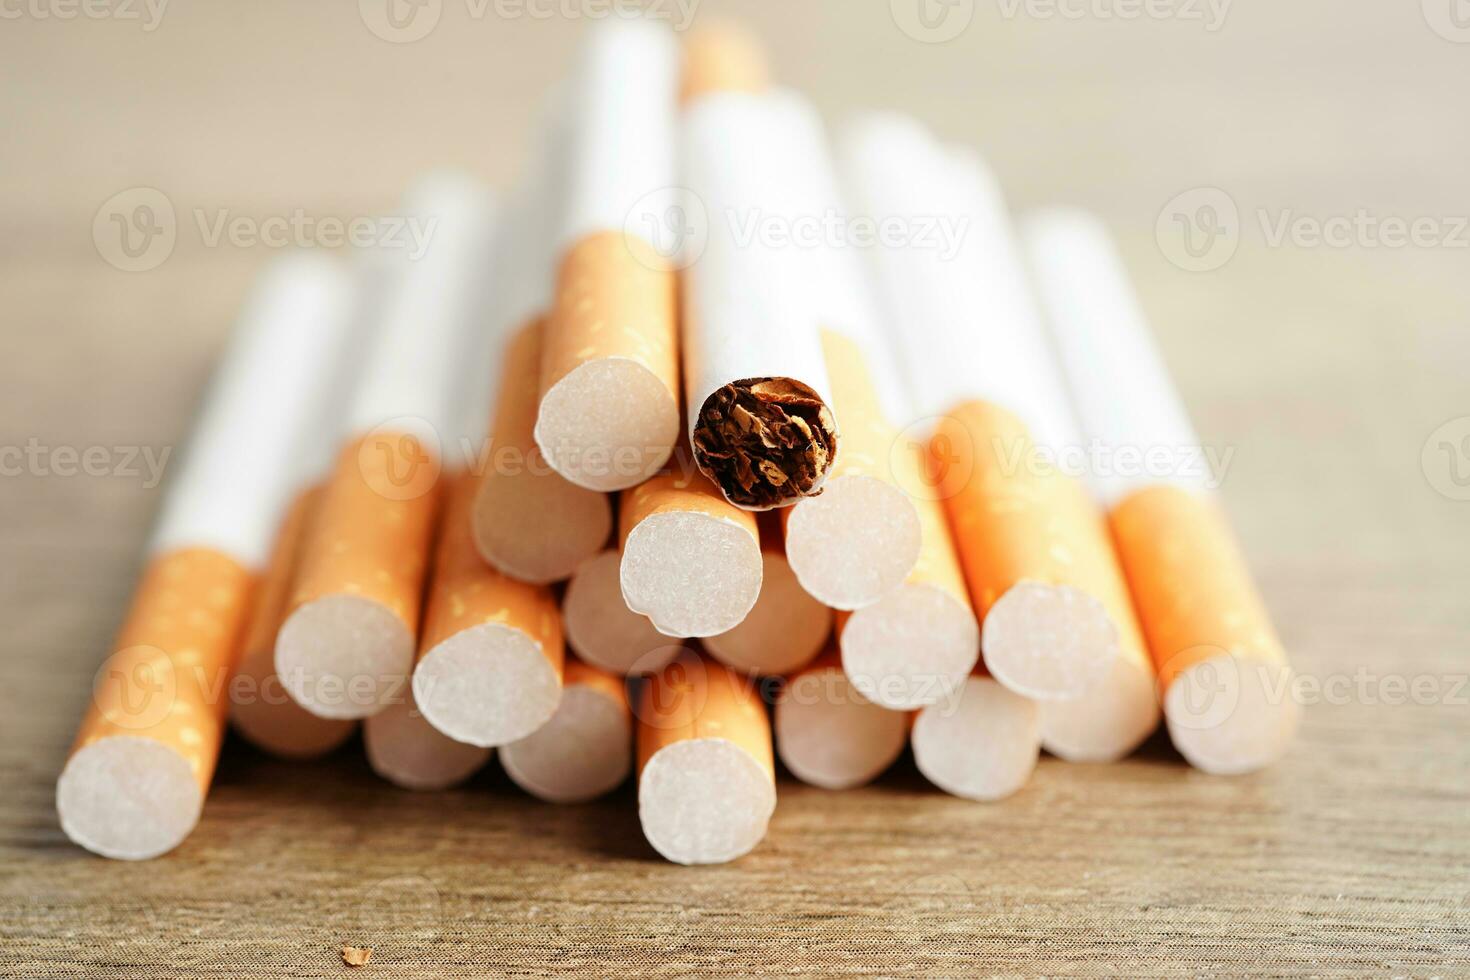 cigarrillo, rollo de tabaco en papel con tubo de filtro, concepto de no fumar. foto